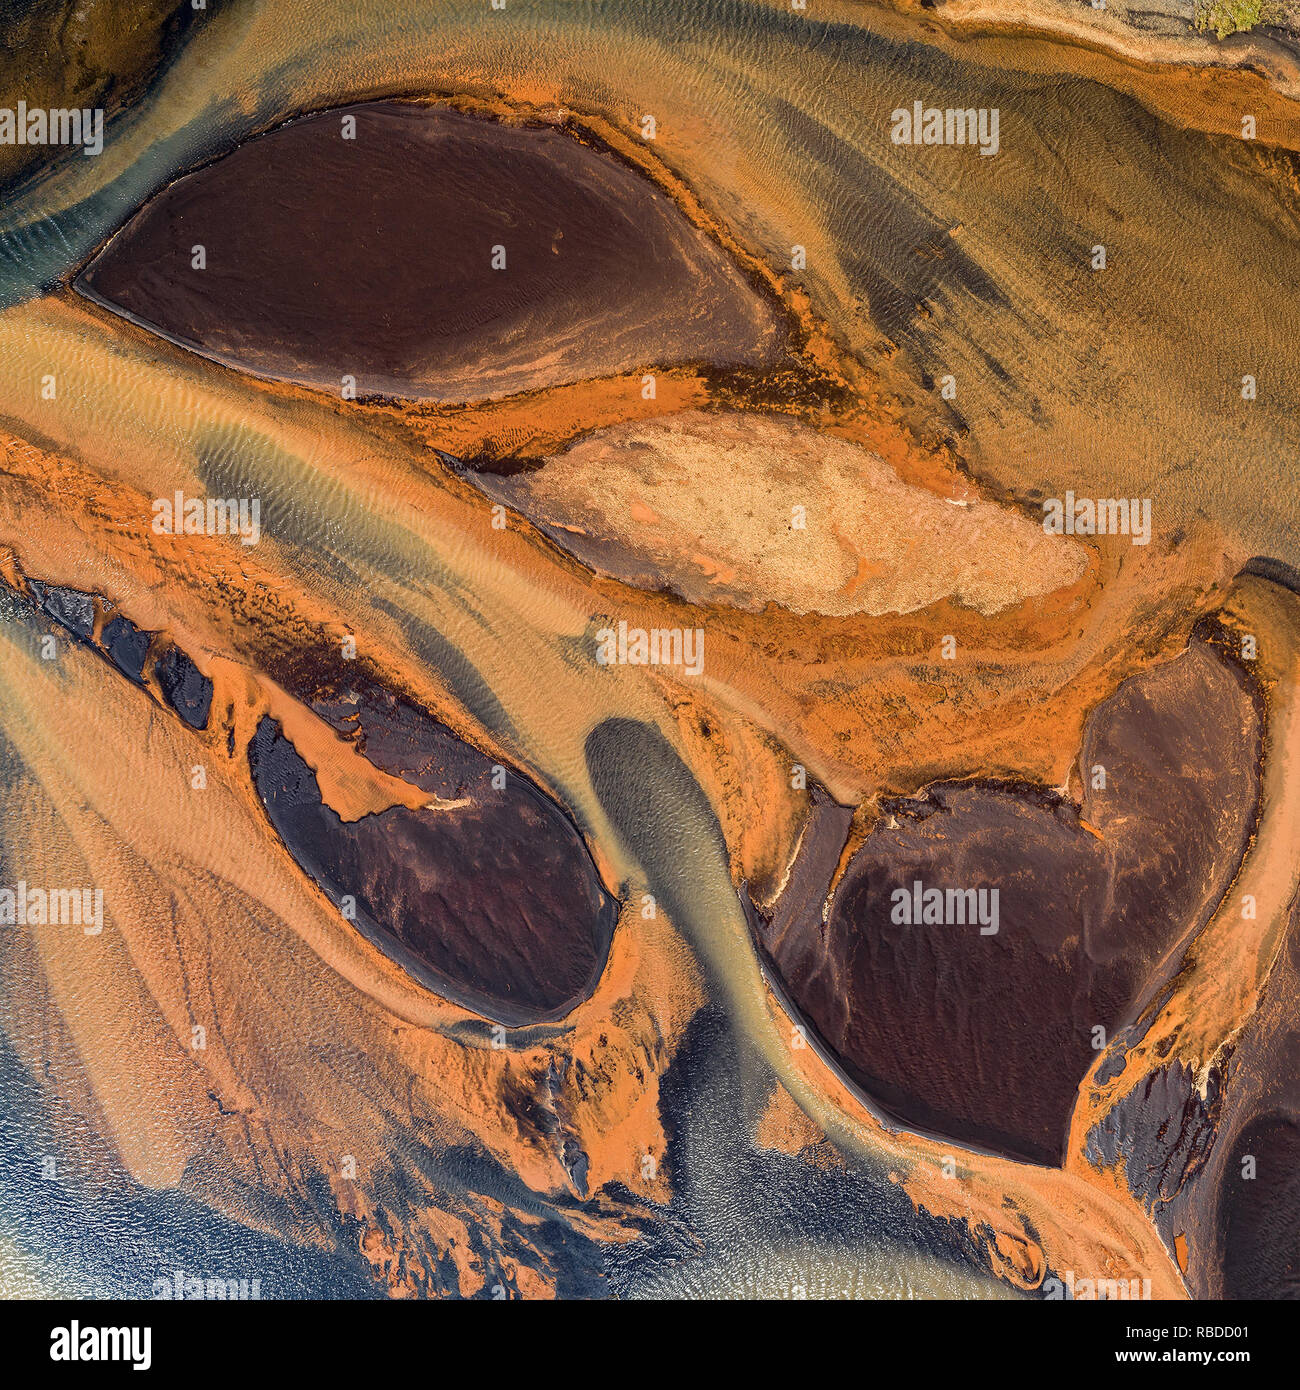 Les dépôts estuariens de l'Islande, Affall River. Ces images illustrent l'antenne résumé la beauté de la terre comme elle est façonnée par l'eau environnante. Des images montrent un étang de stockage de boue rouge aux couleurs incroyables, d'un vert éclatant et l'eau radioactive présente dans toute la surface de l'eau qui portent une ressemblance frappante avec les arbres. D'autres photographies montrent une incroyable île en forme de cœur et l'énergie géothermique, l'eau de source chaude d'une peinture de couleur de l'effet des dépôts estuariens et des icebergs qui ressemblent à des diamants contre un arrière-plan. La remarquable fermoirs sont une partie de l'eau.Shapes.Earth pro Banque D'Images